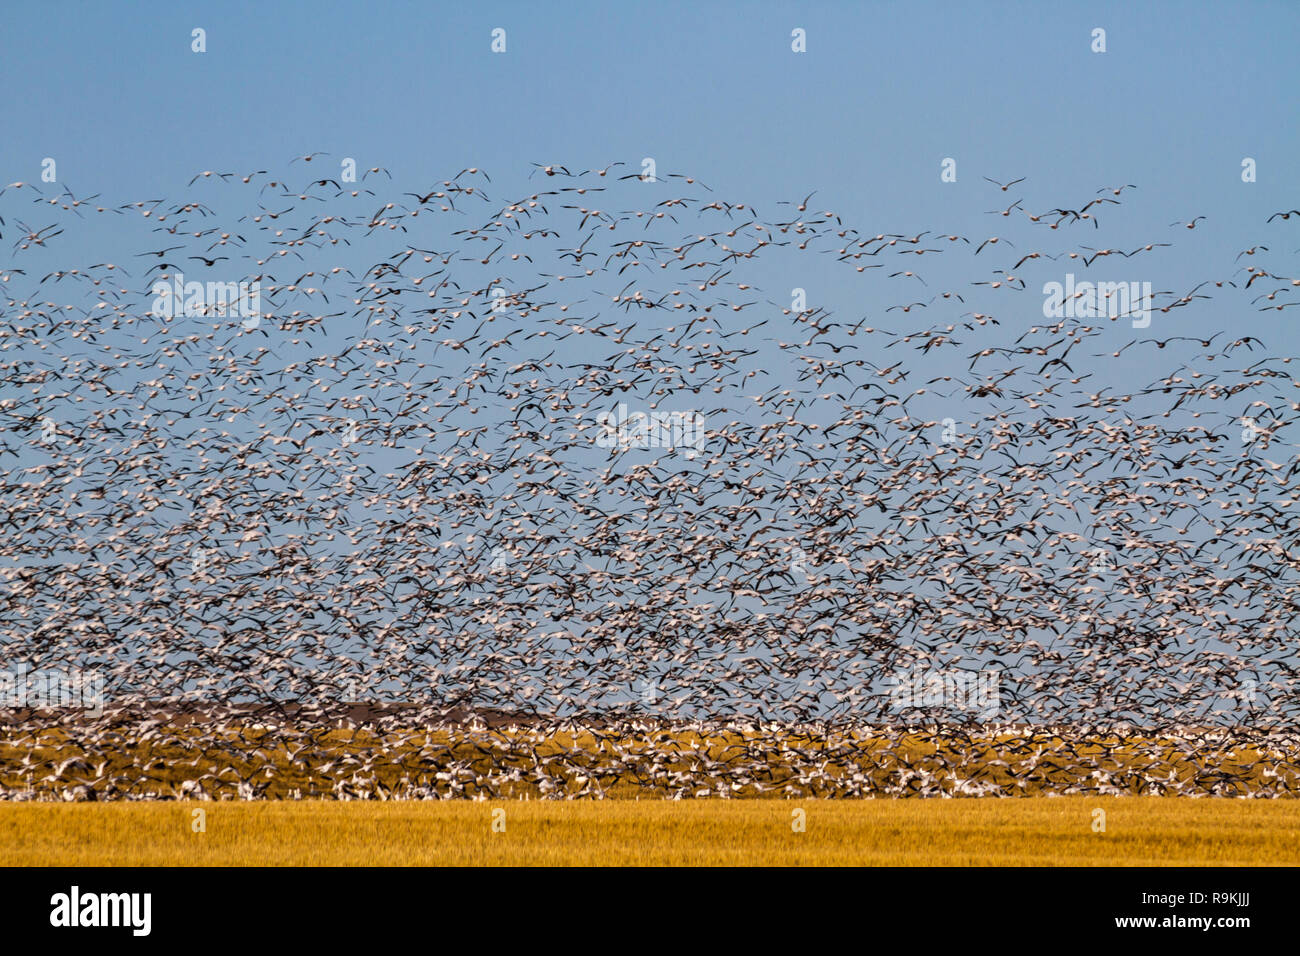 Tausende von Schnee Gänse - Anser caerulescens - Fliegen über einem goldenen Weizenfeld mit einem blauen Himmel an einem sonnigen Tag im Süden fallen, Saskatchewan, Kanada Stockfoto